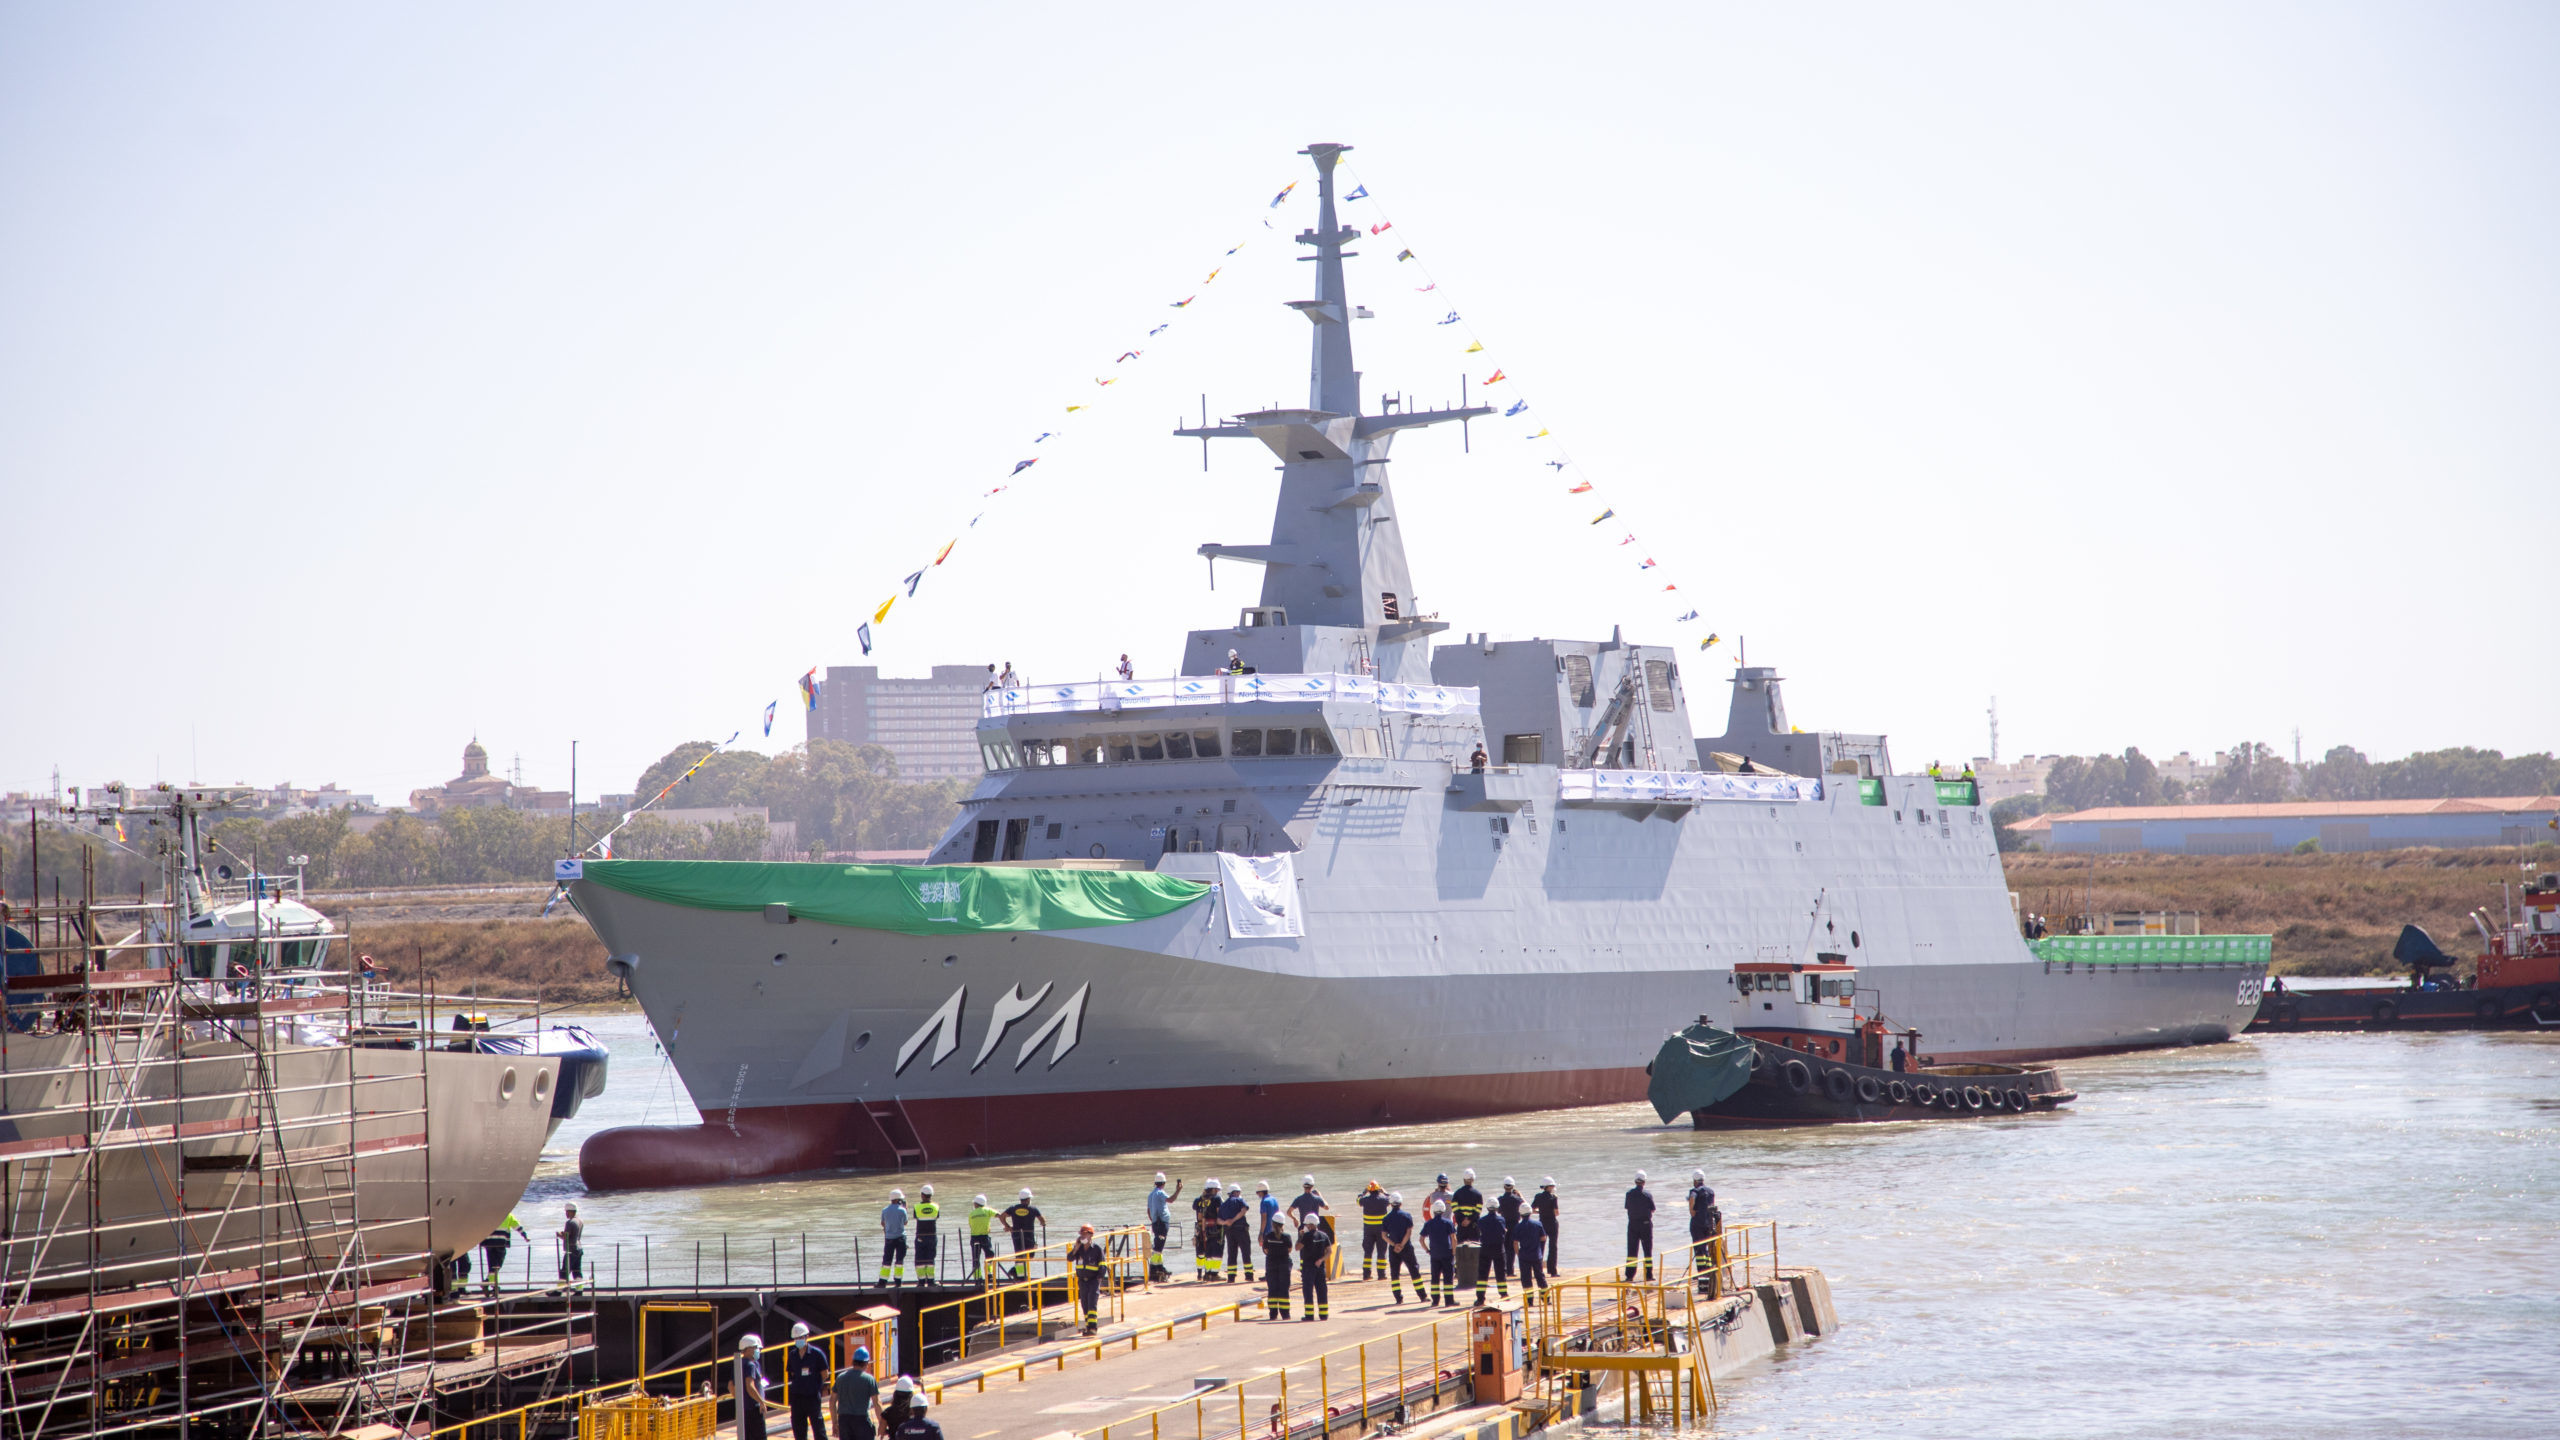 Spanish Gov’t Company To Build Ships in Saudi Arabia for Saudi Navy